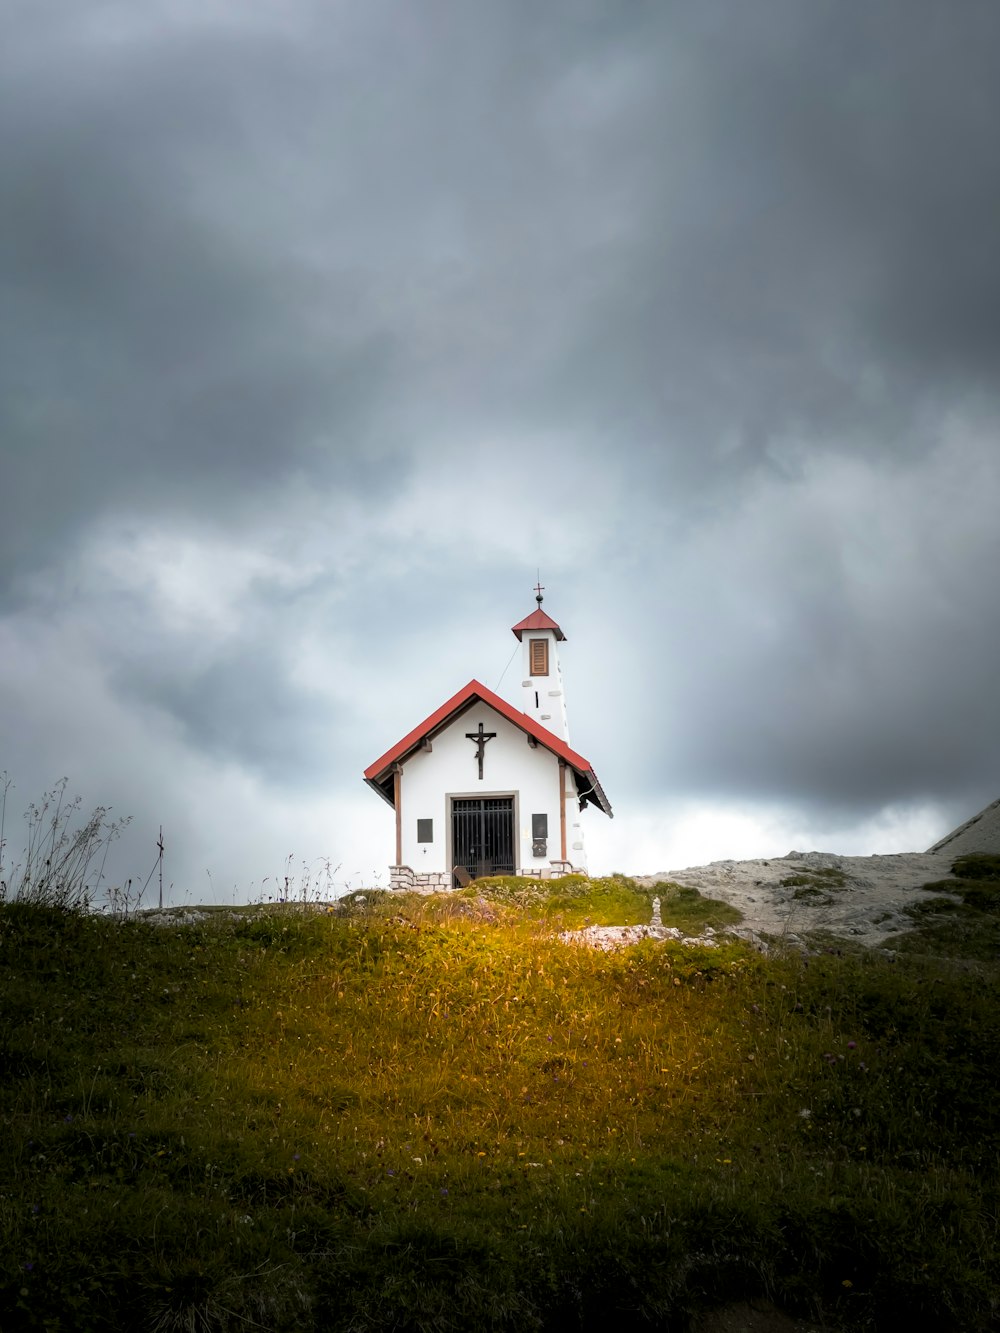 曇り空の下、丘の上の小さな教会